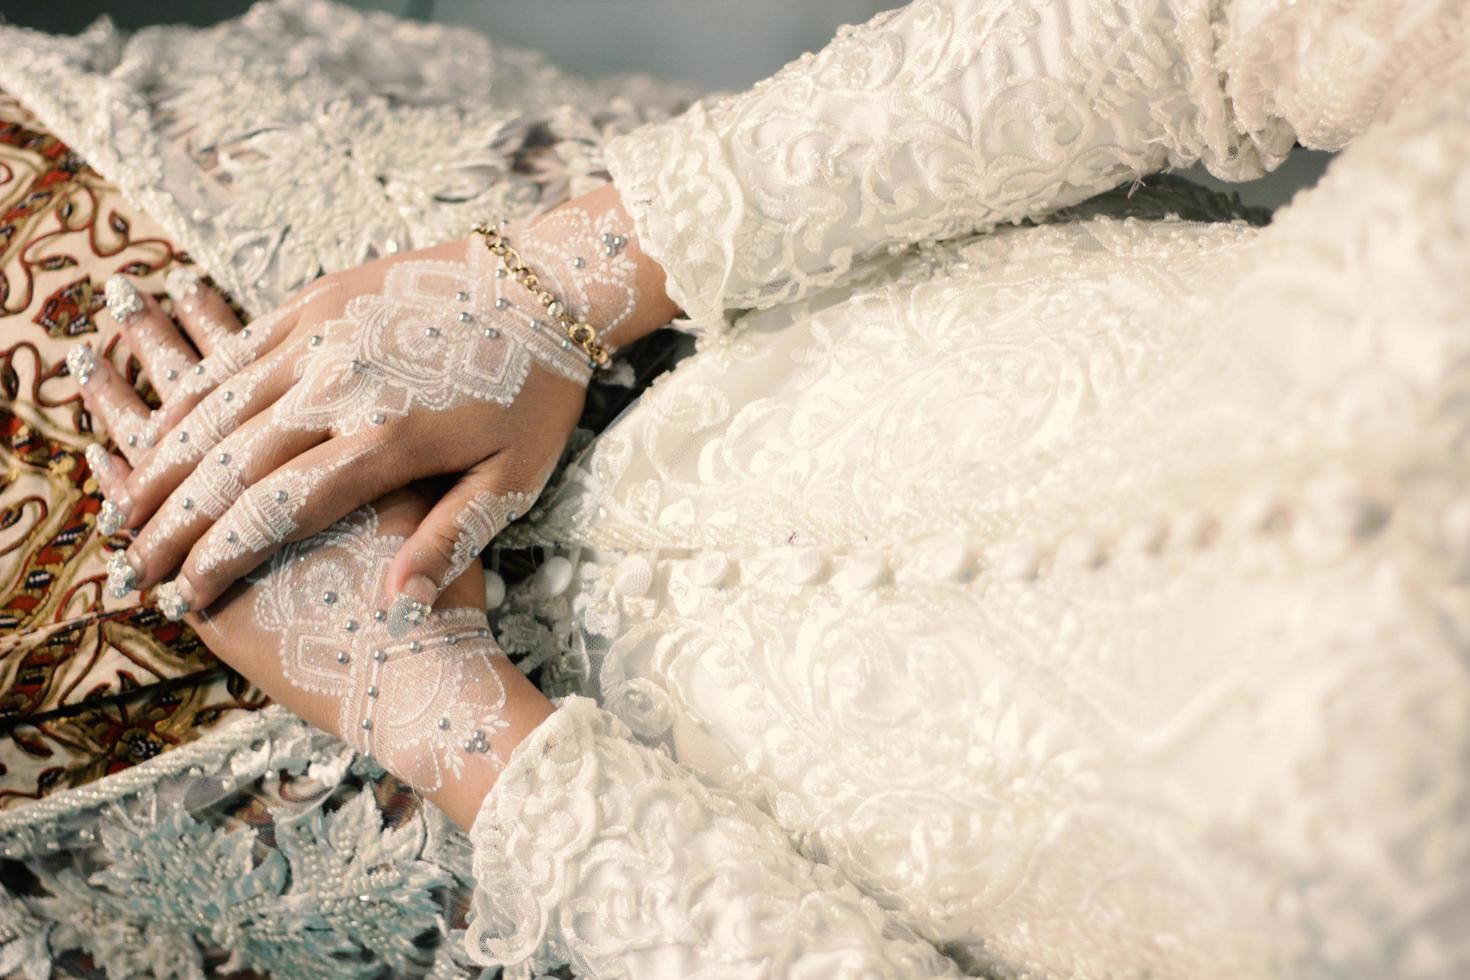 novia tallada con henna hermosa y única en la mano de la novia foto